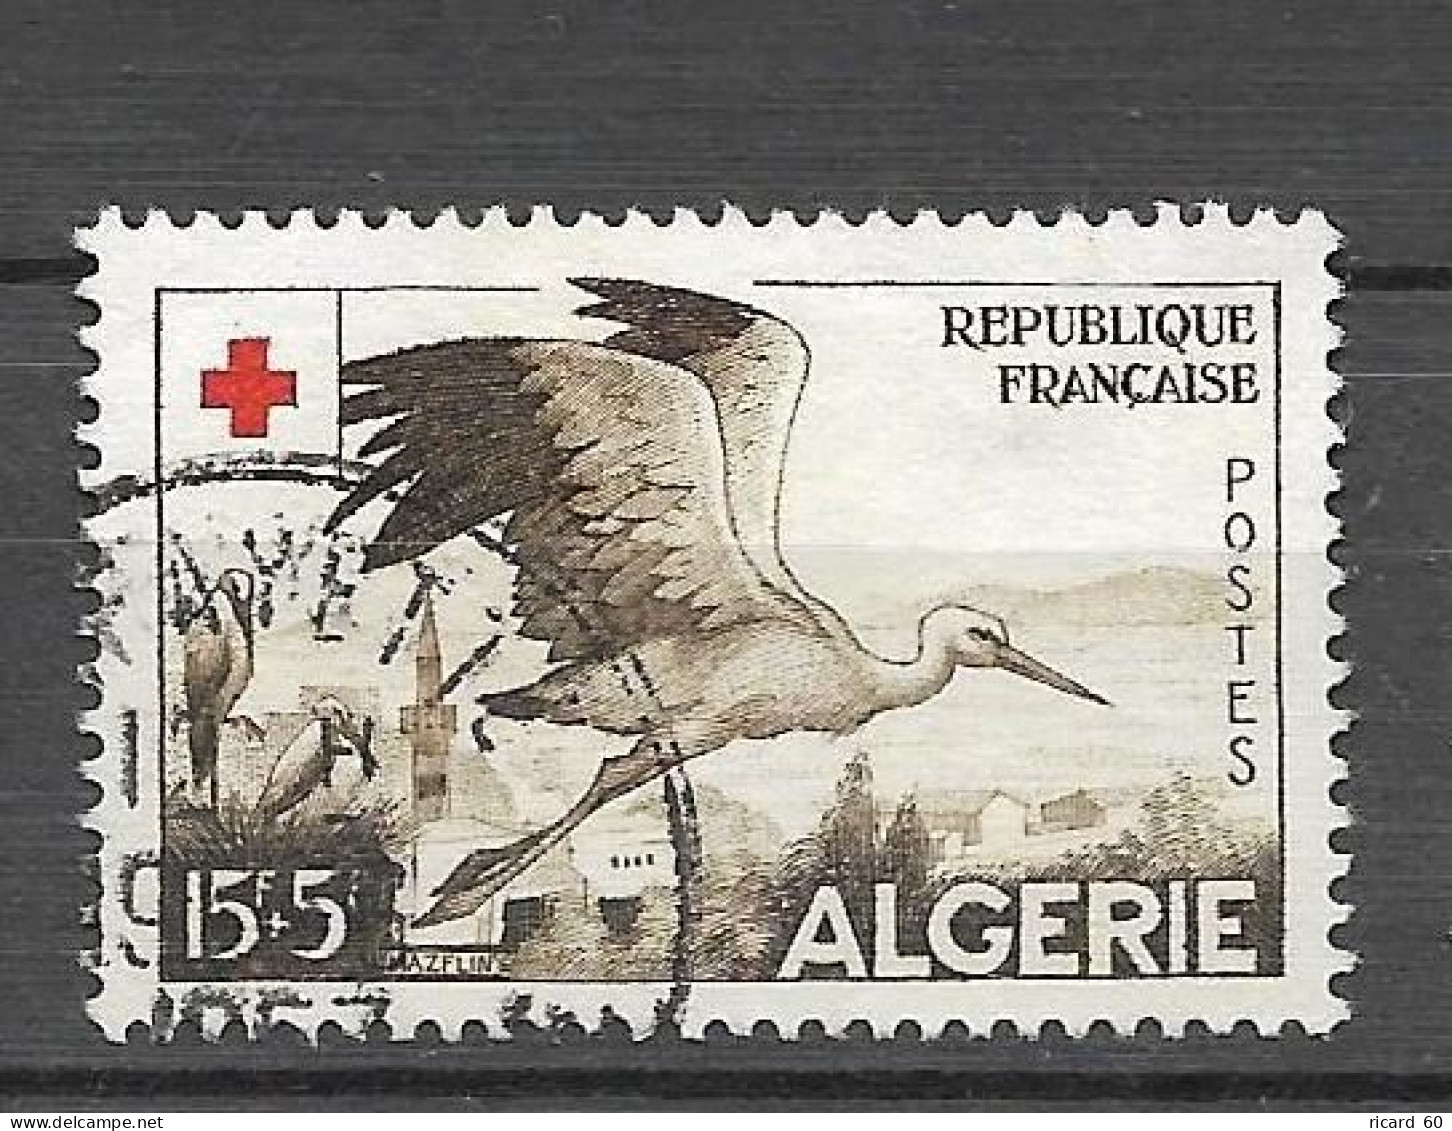 Timbres Oblitérés Algérie, N°344 Yt, Croix Rouge 1957, Cigogne - Used Stamps